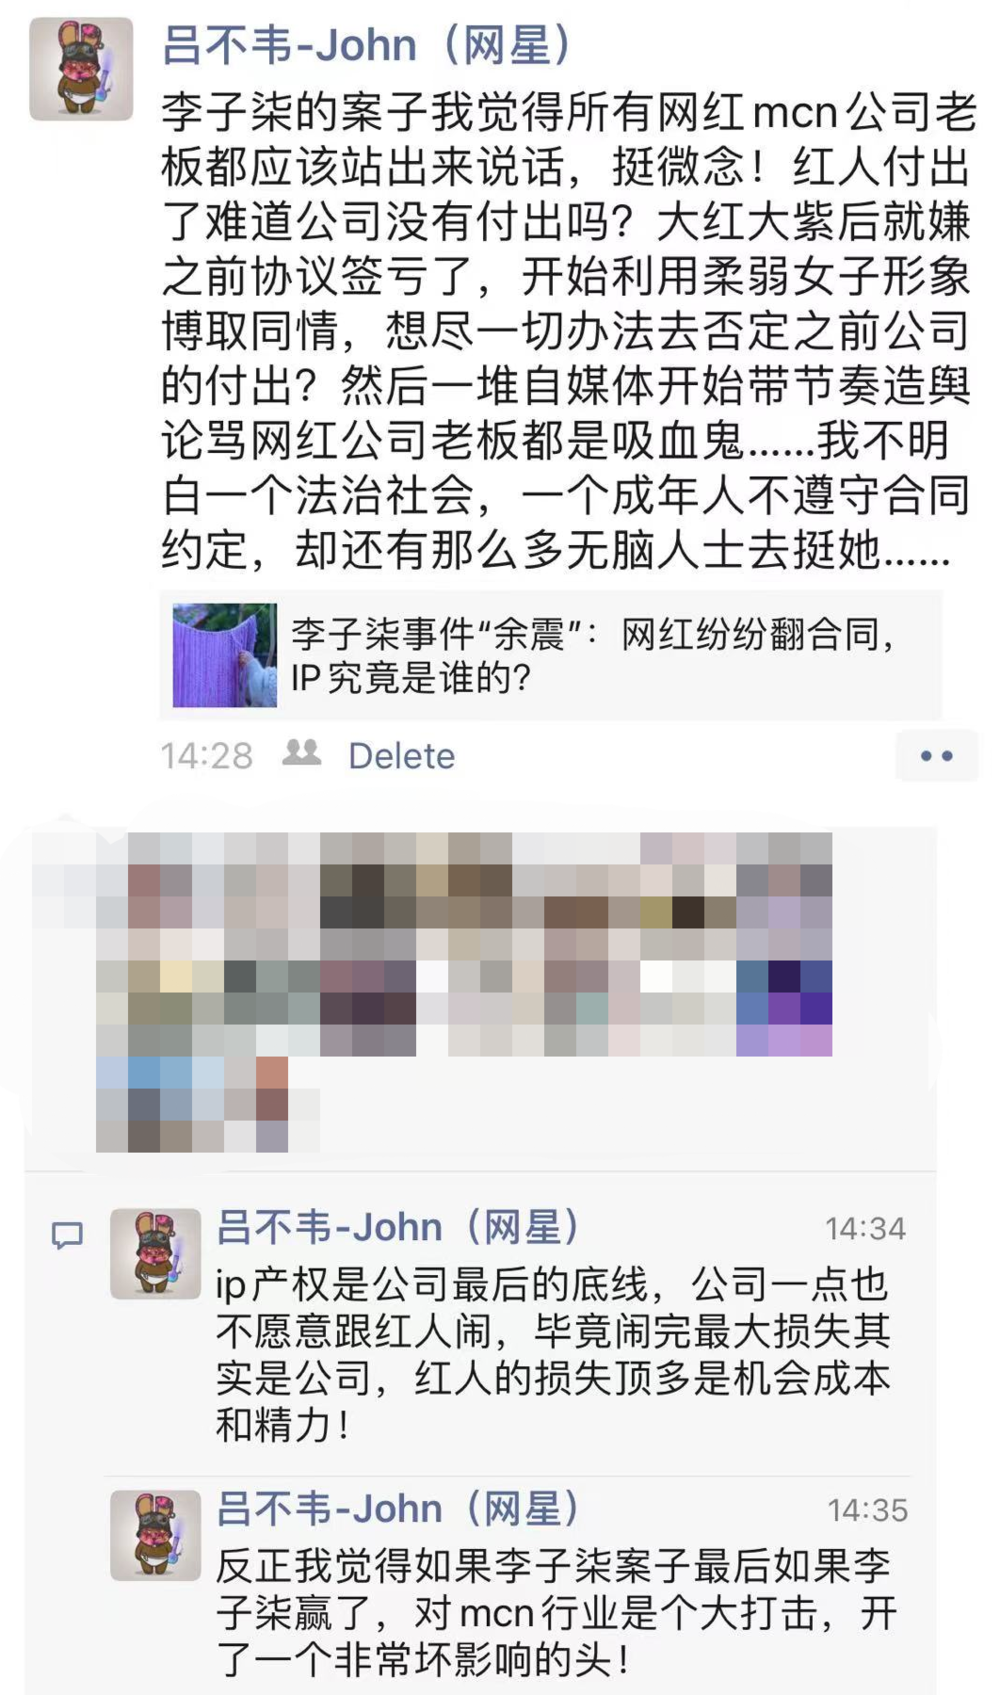 吕不韦朋友圈发表对此事的评论，经其同意公开